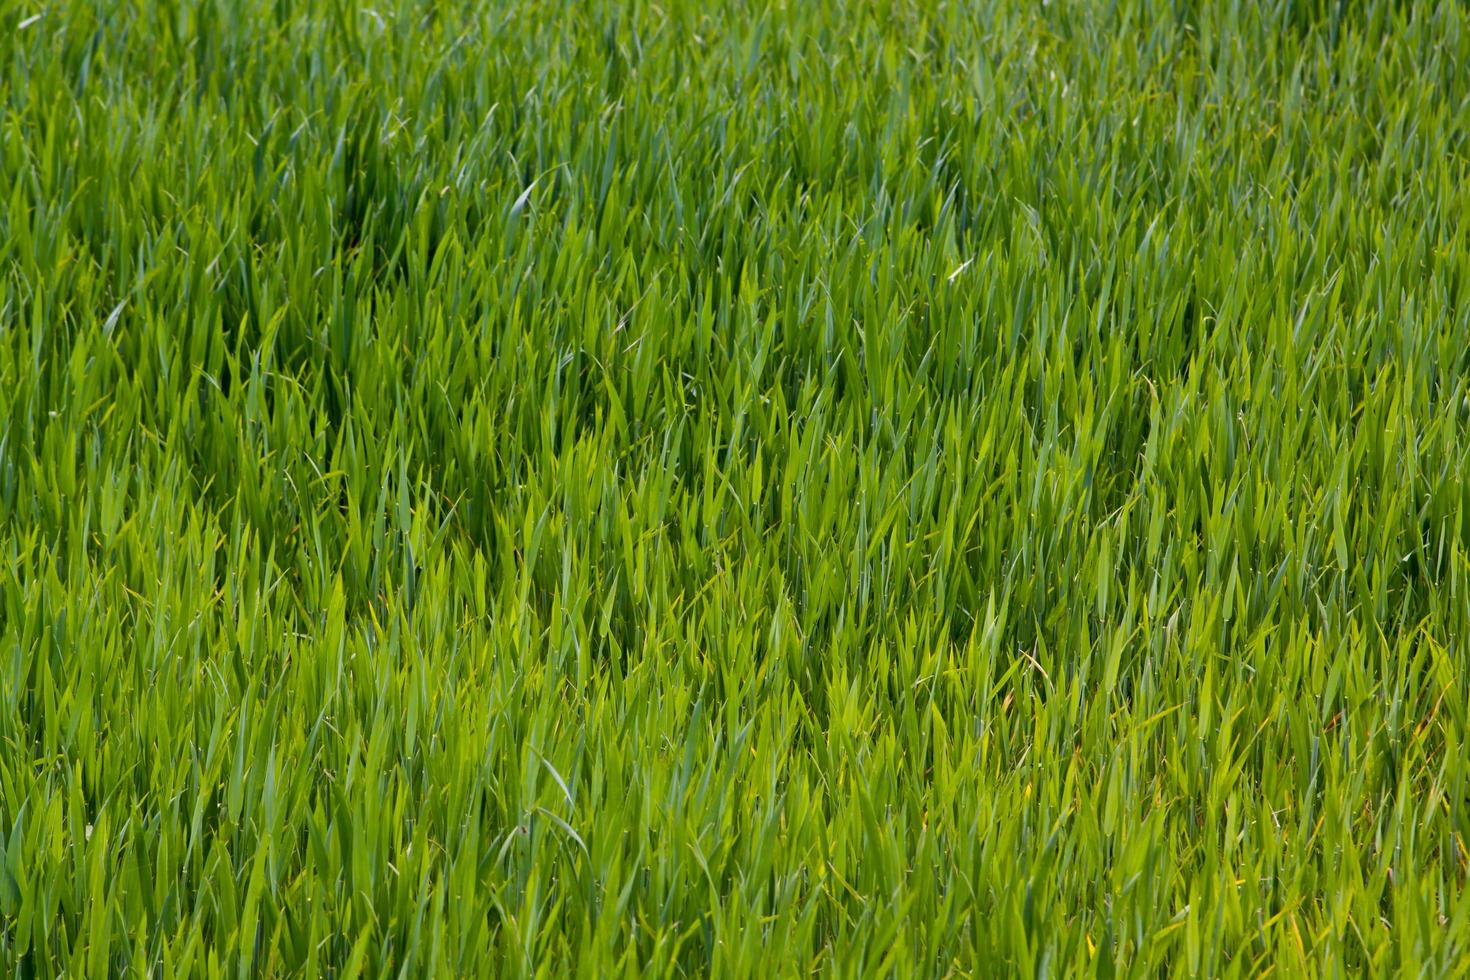 grön gräs textur kan vara använda sig av som bakgrund foto